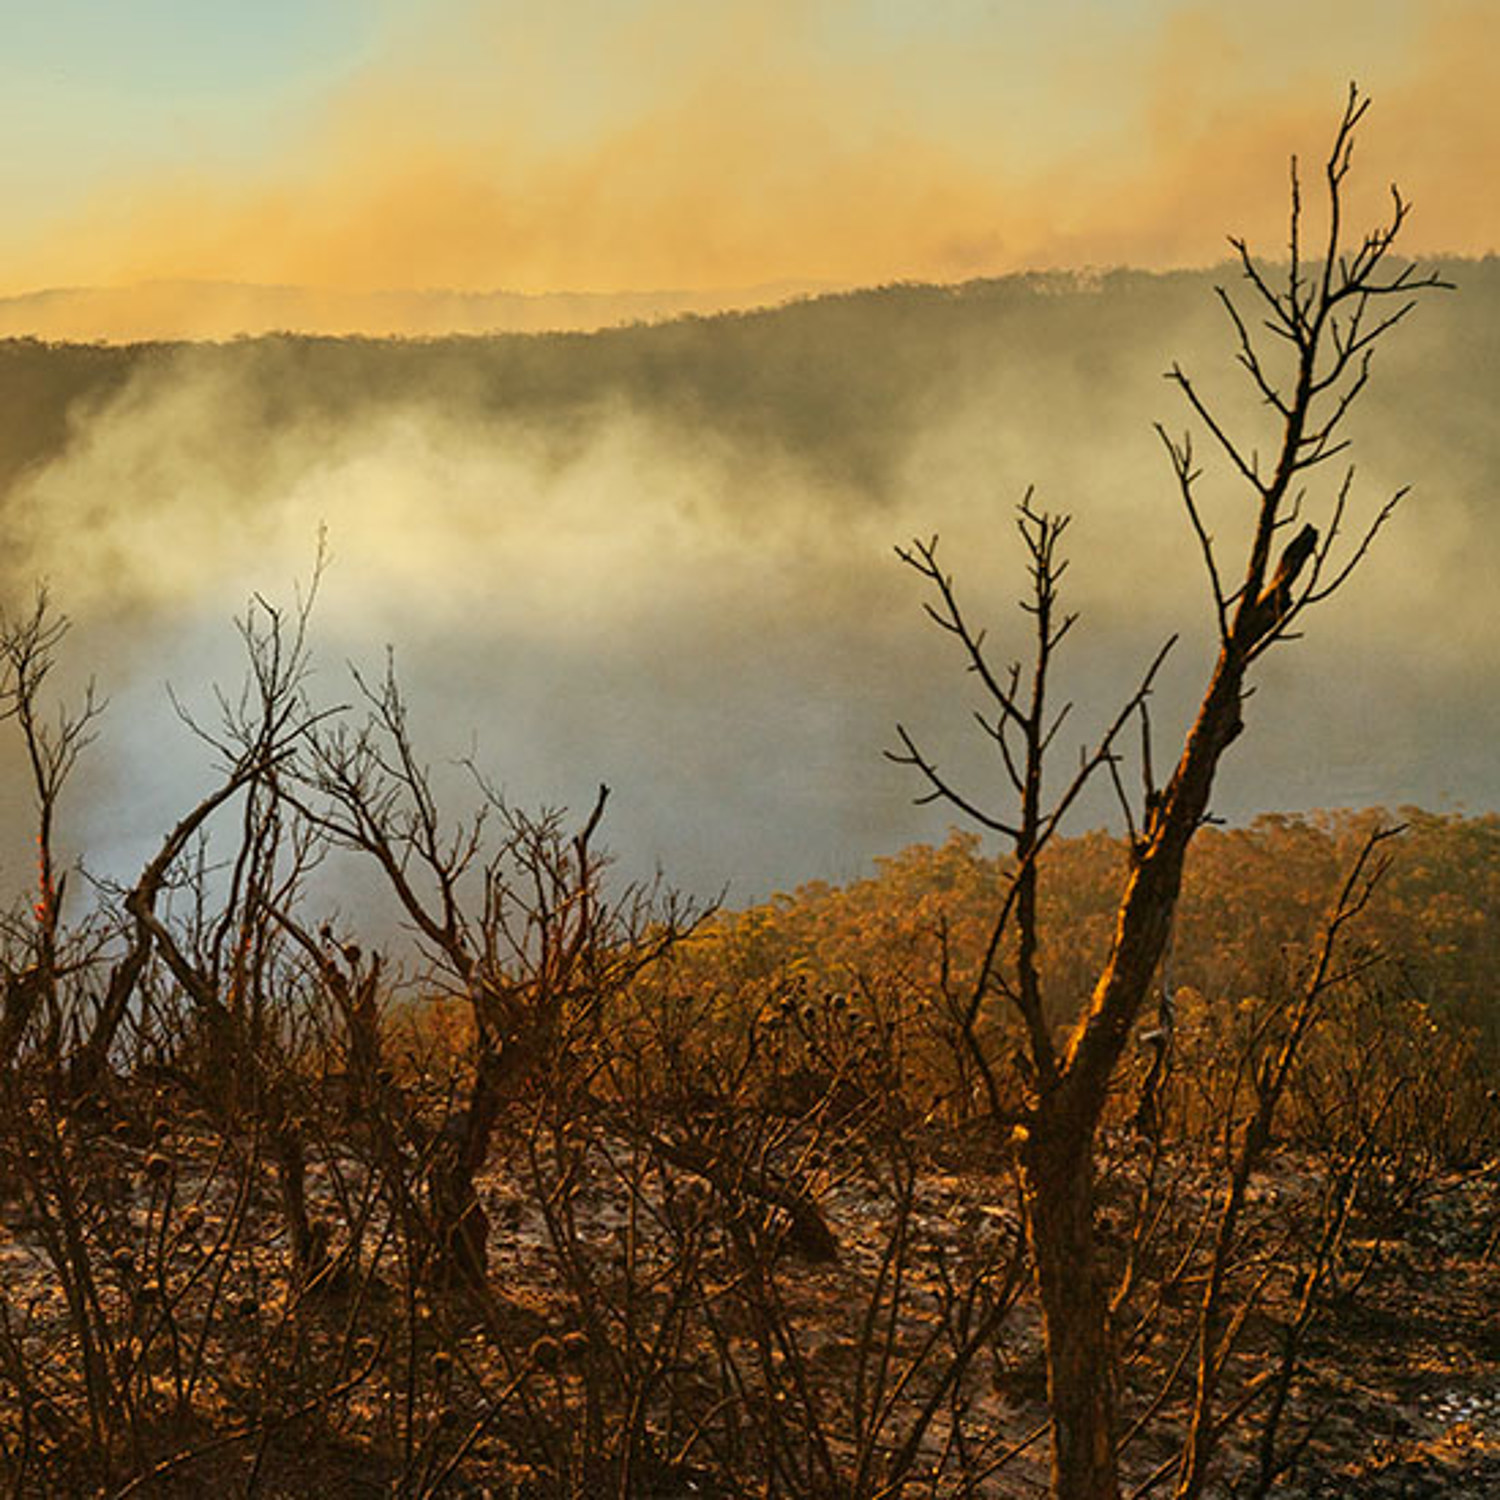 Smouldering forest after bushfire